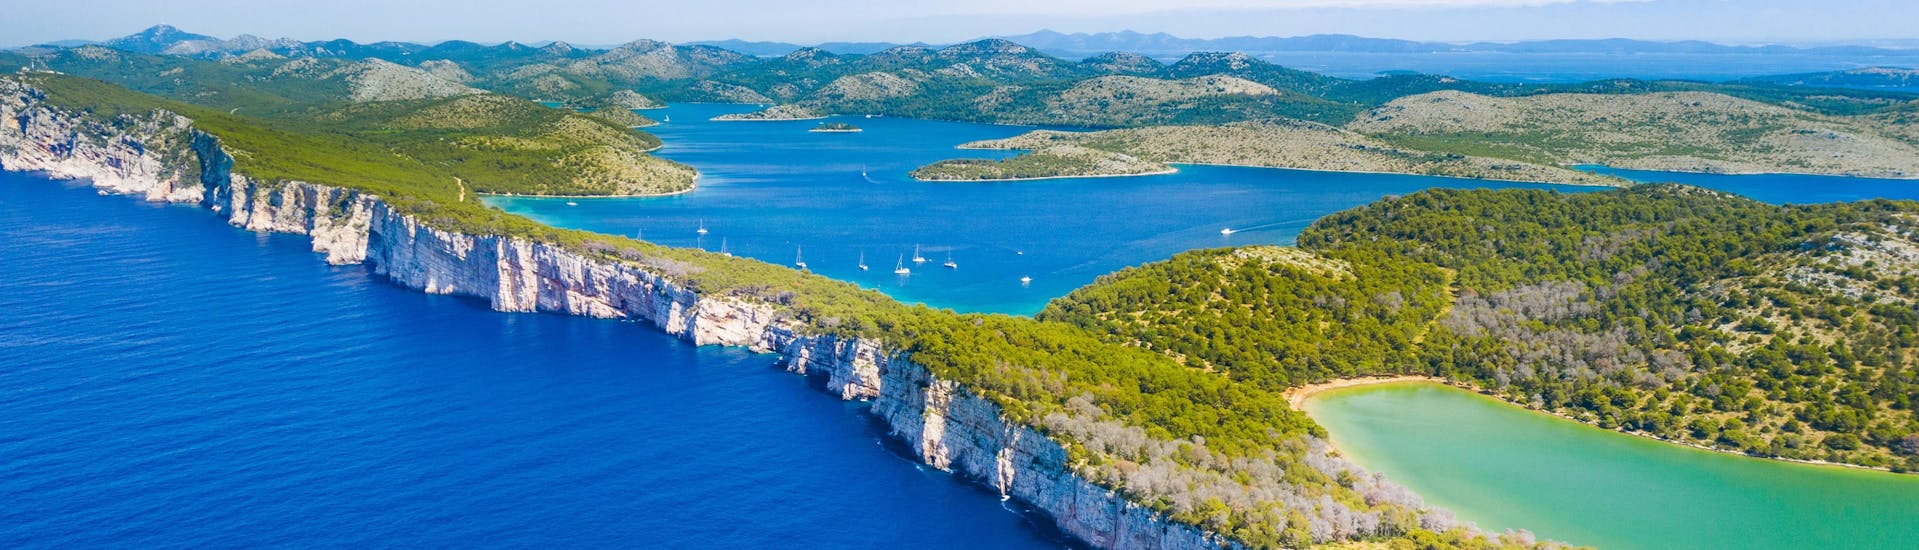 Los acantilados de la hermosa isla de Dugi Otok, que podrá descubrir con un paseo en barco.